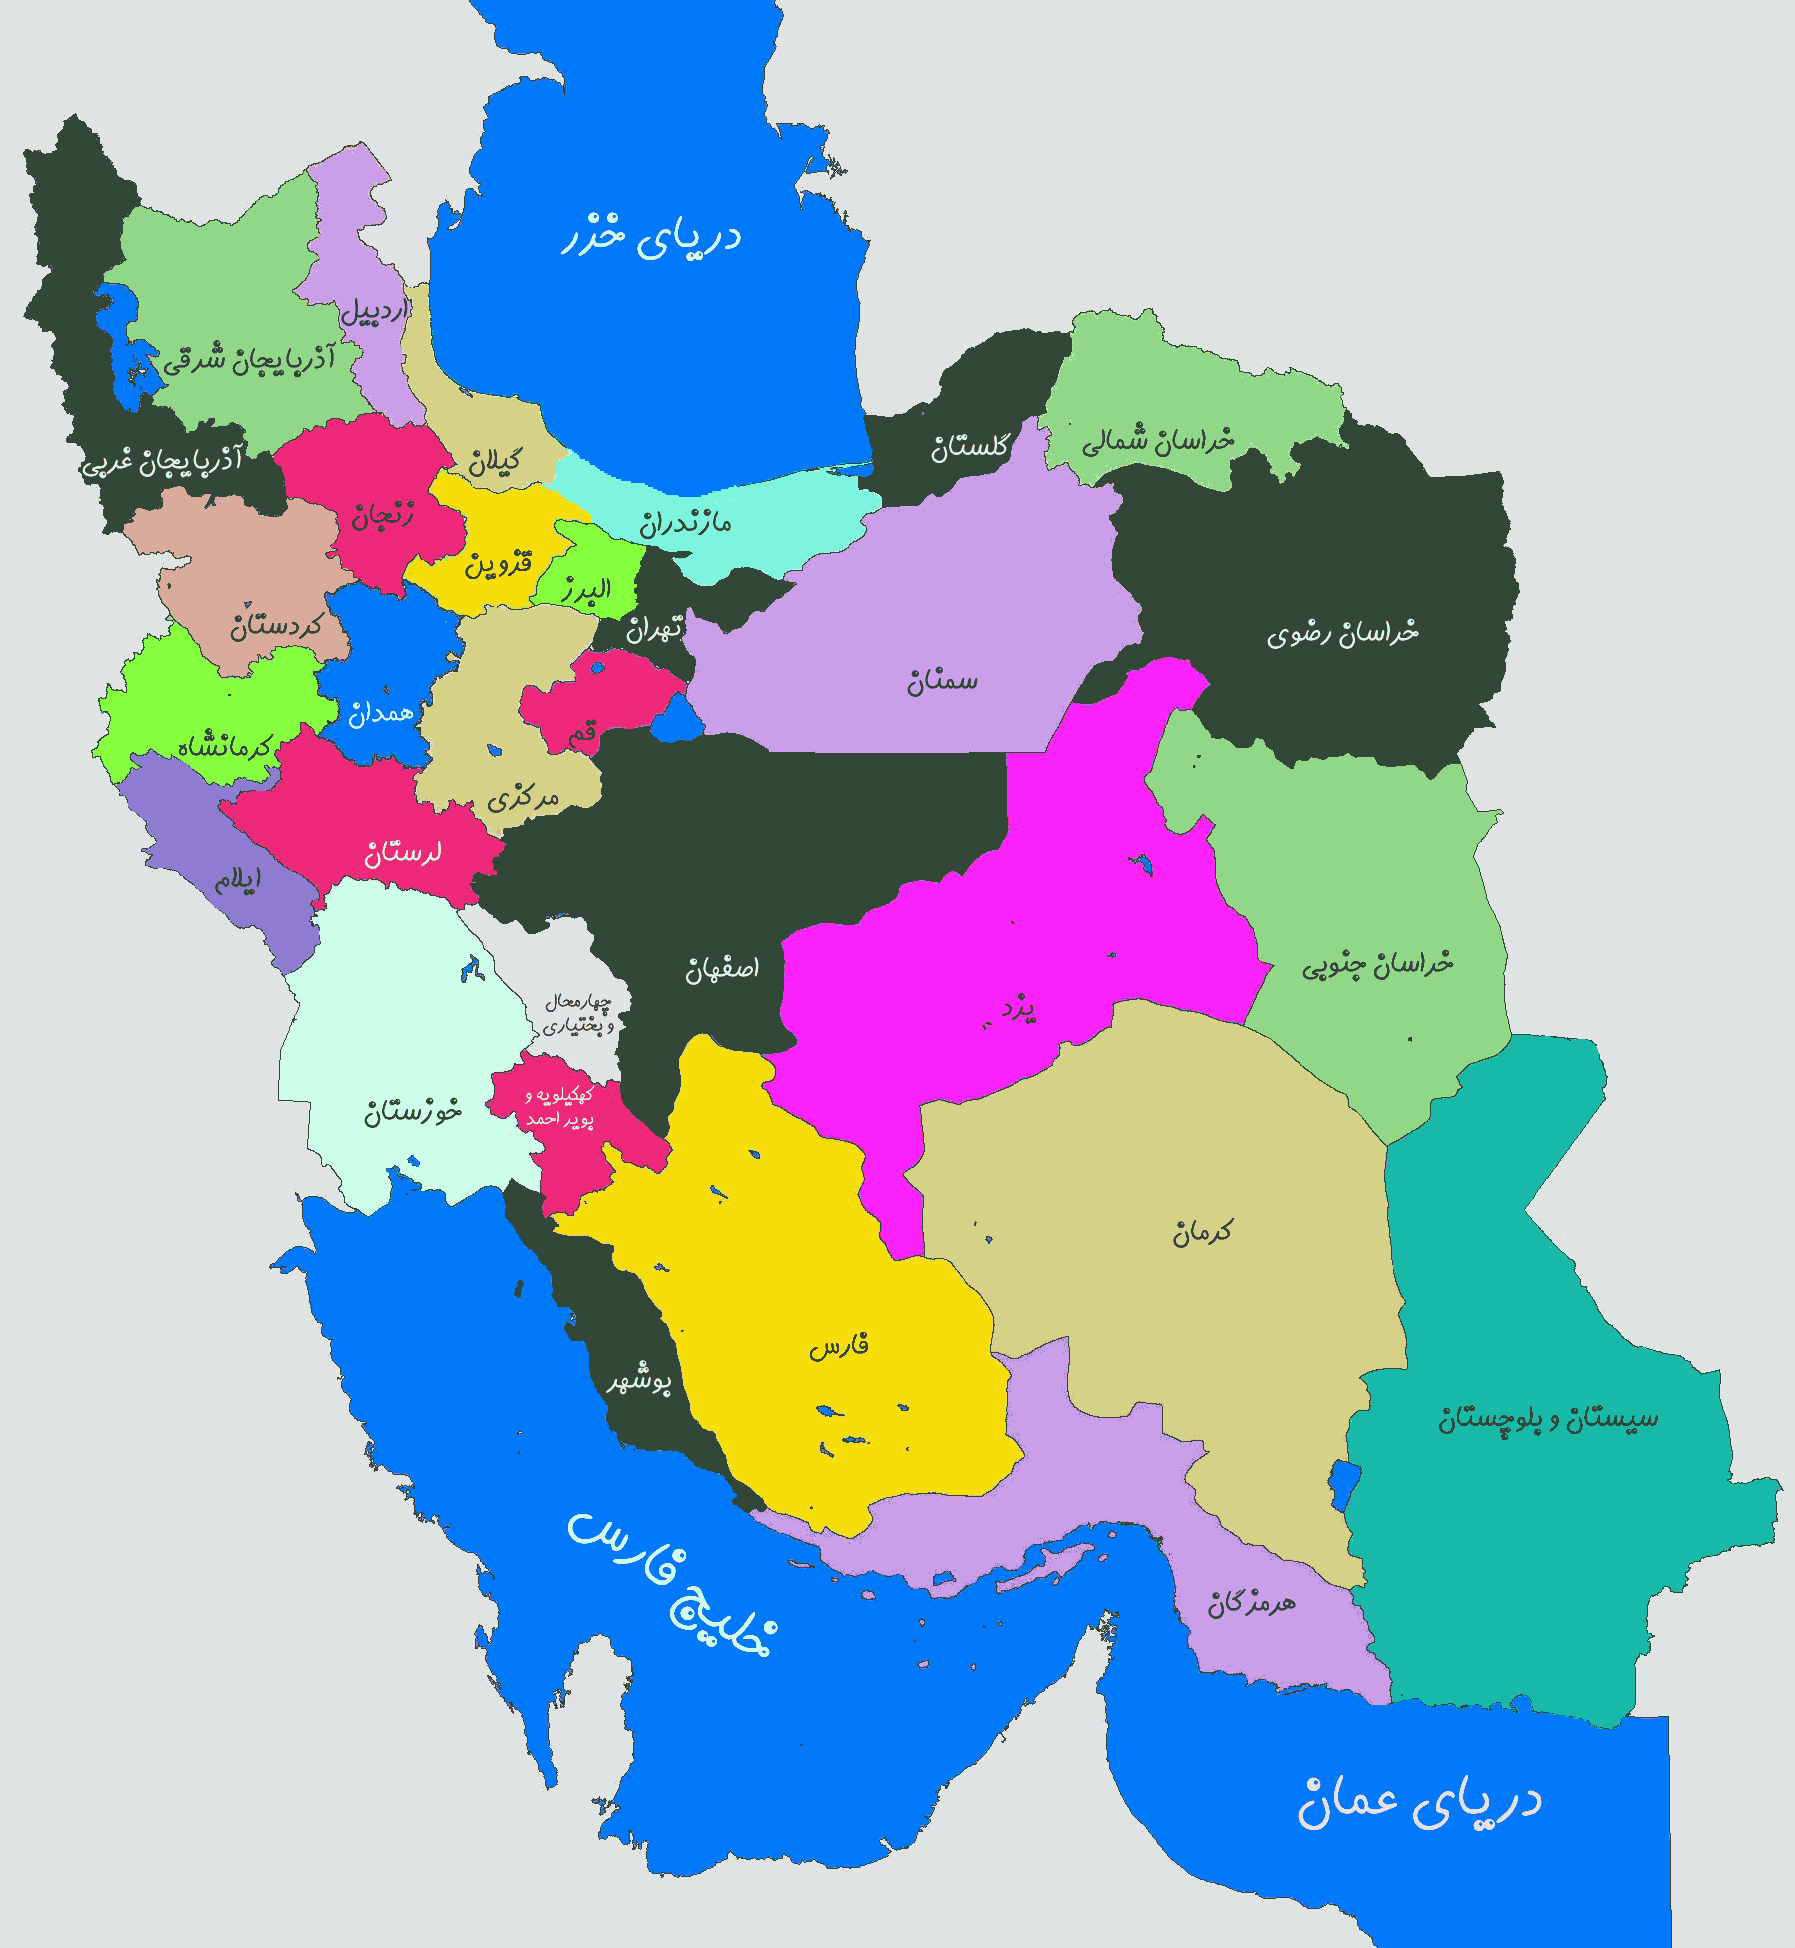 عکس نقشه ایران در زمان هخامنشیان